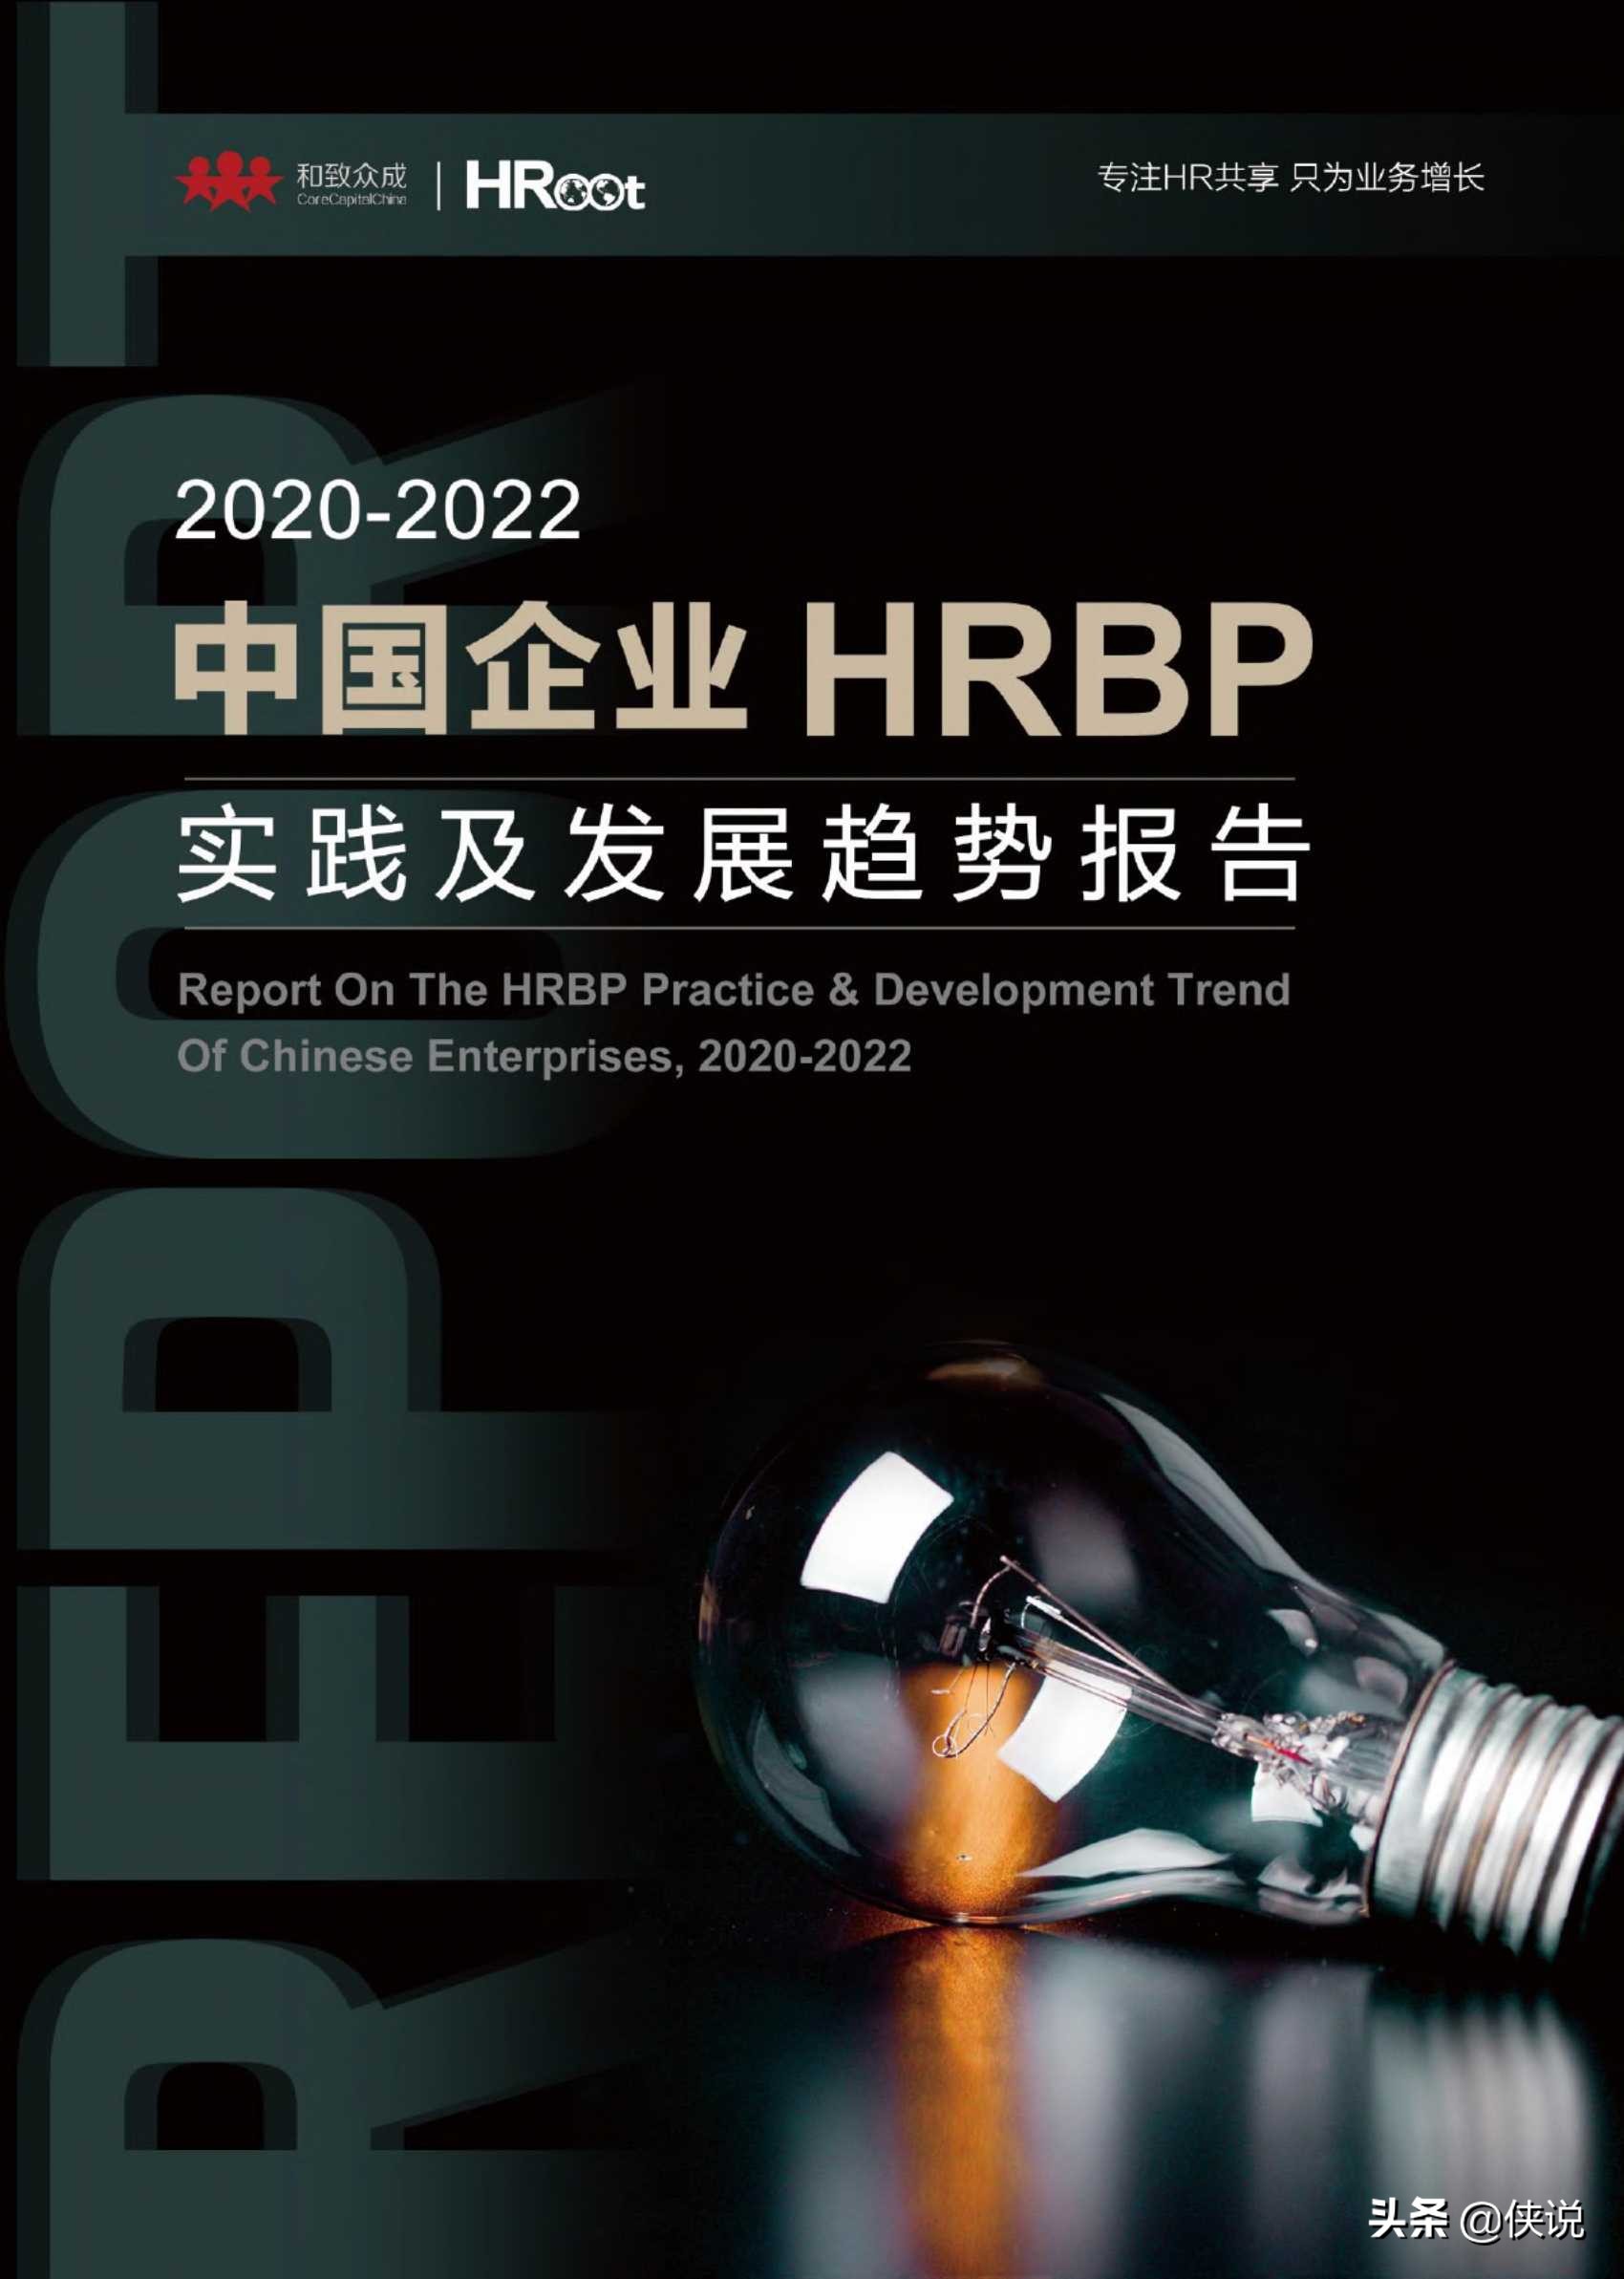 2020-2022中国企业HRBP实践及发展趋势展望